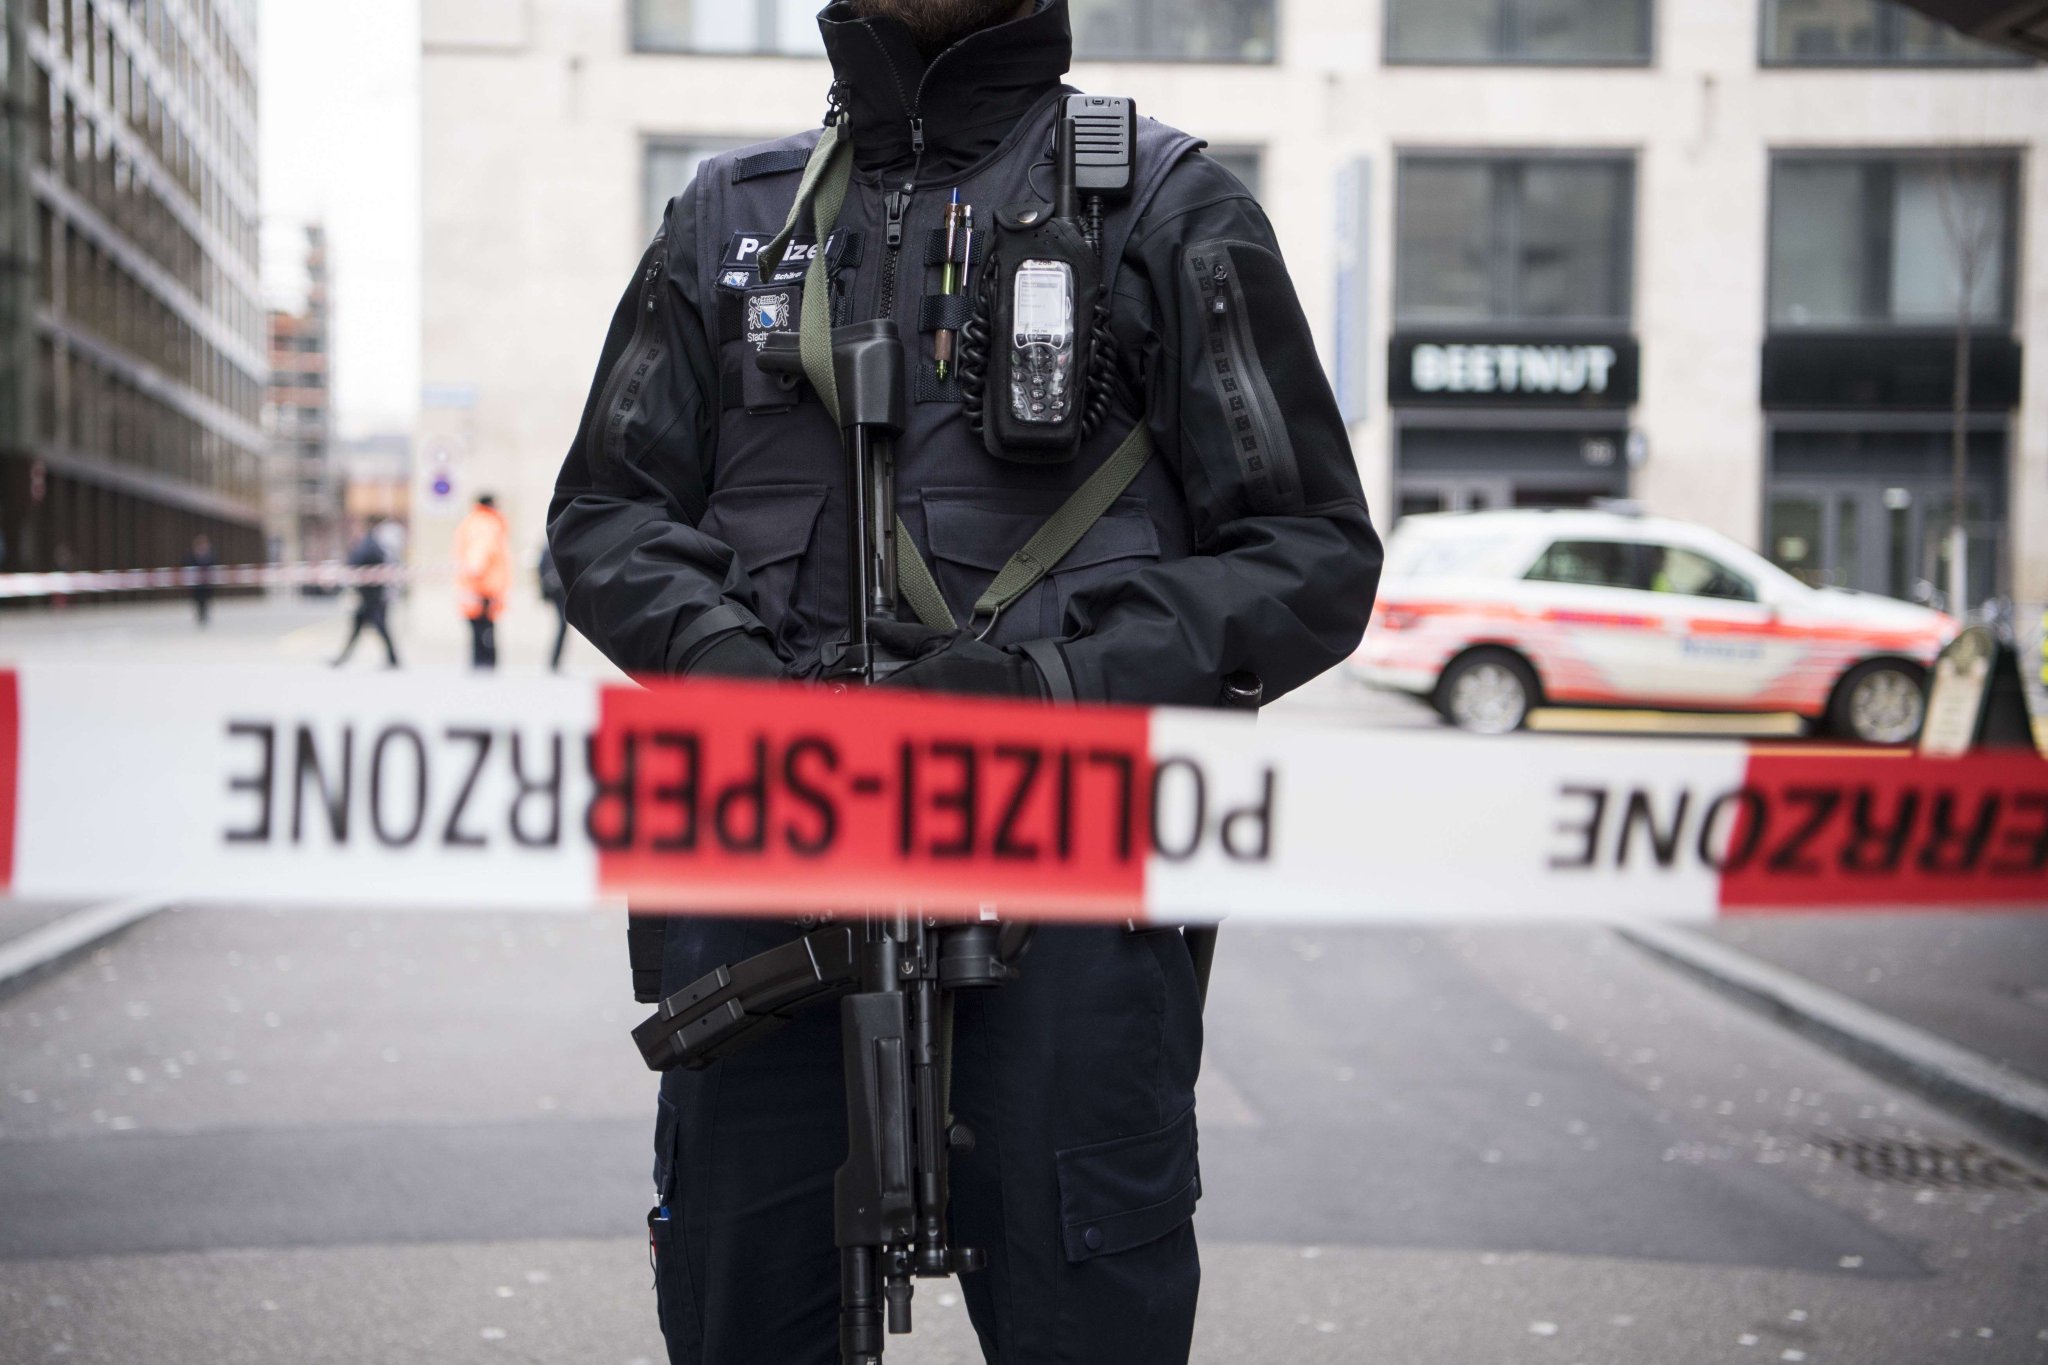  Switzerland : suspected terror incident in Lugano